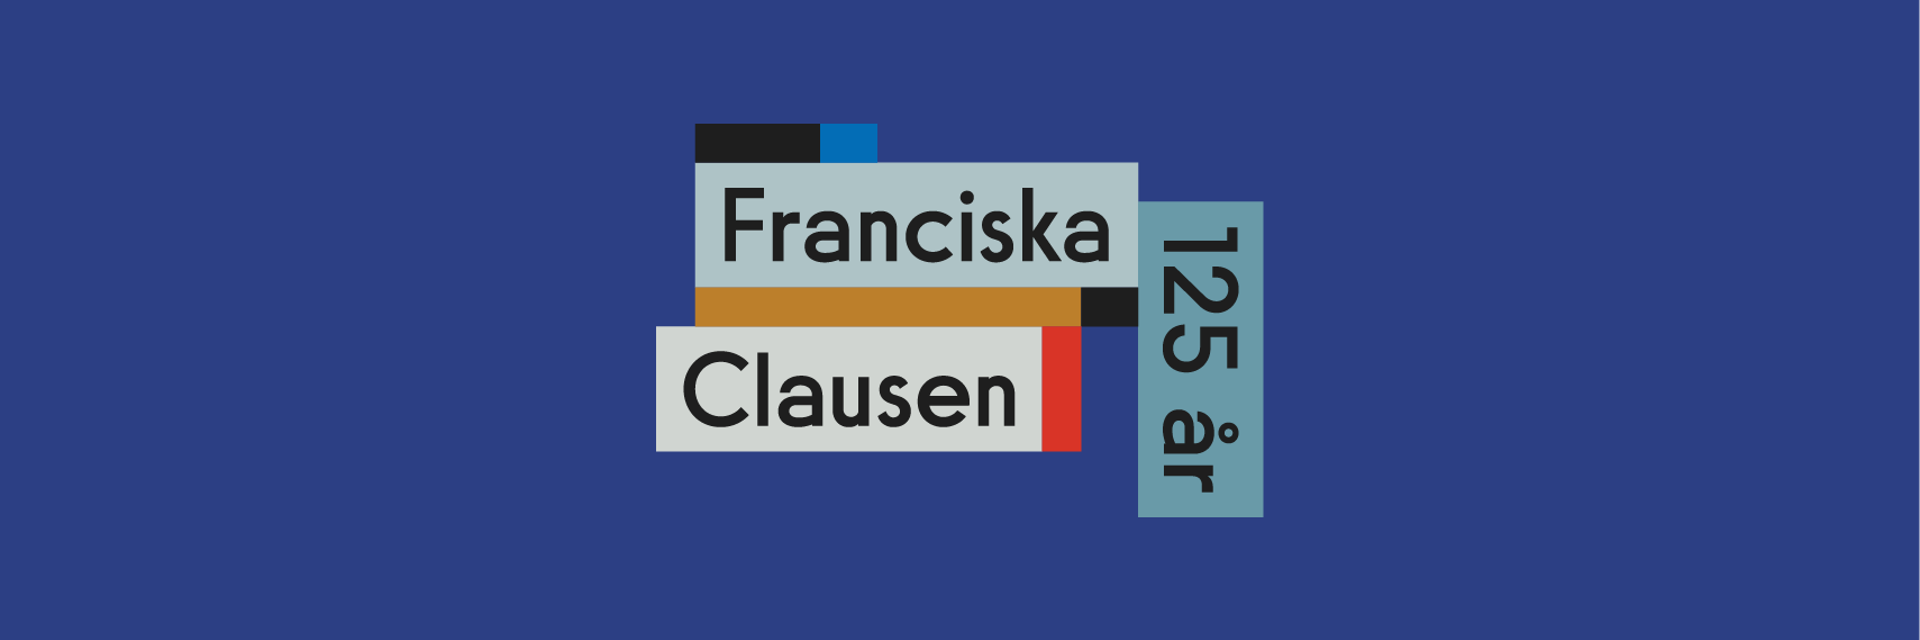 Franciska Clausen logo